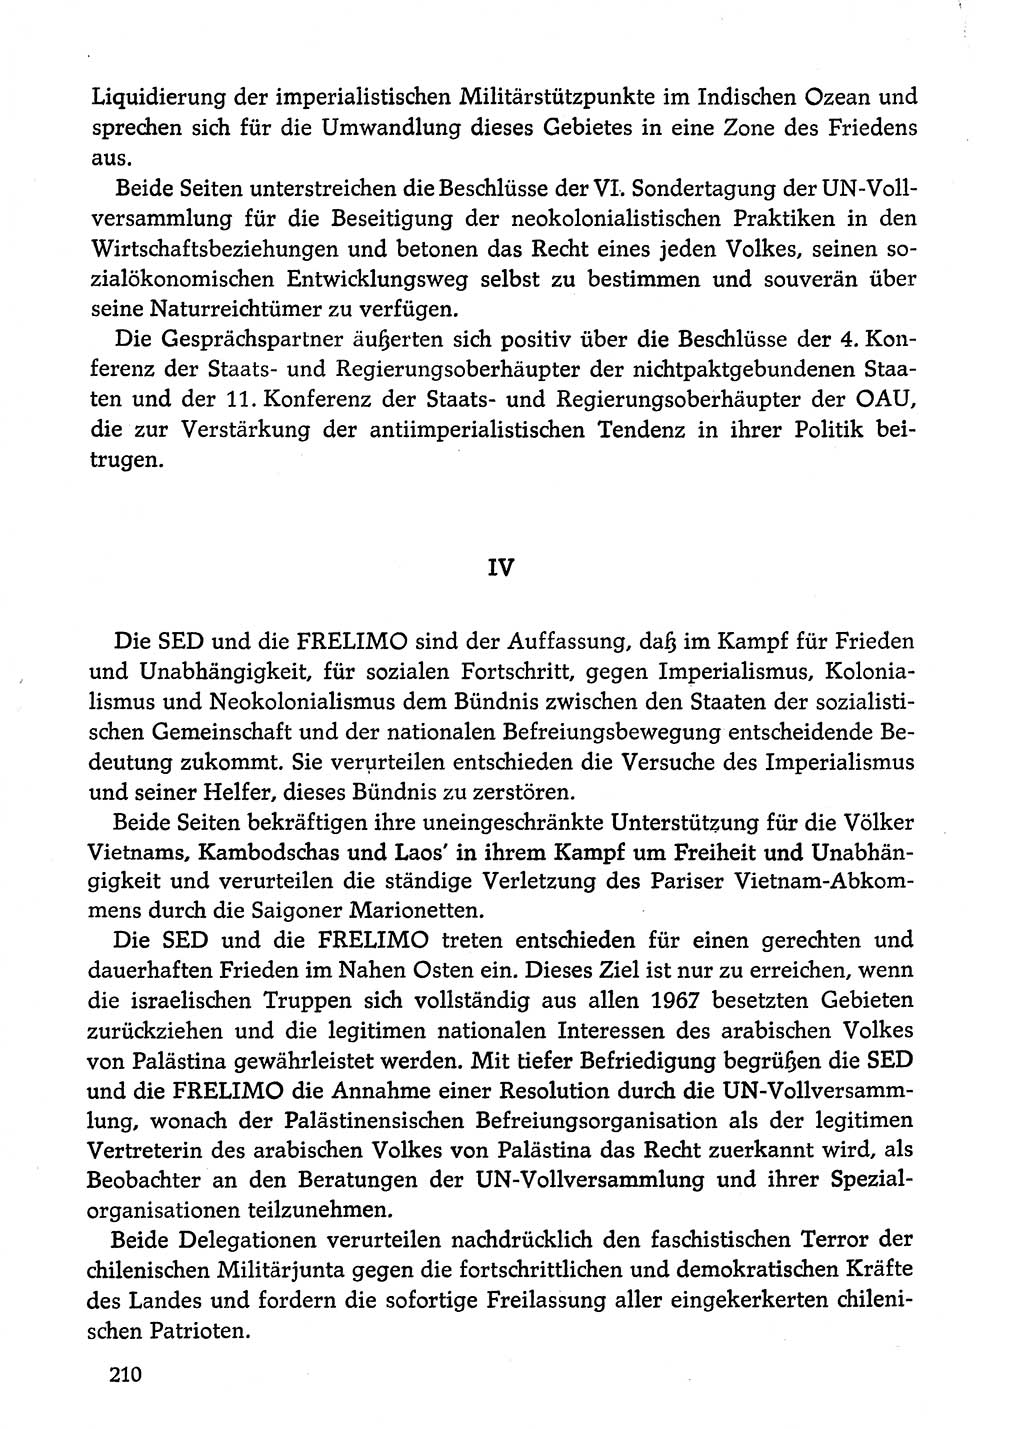 Dokumente der Sozialistischen Einheitspartei Deutschlands (SED) [Deutsche Demokratische Republik (DDR)] 1974-1975, Seite 210 (Dok. SED DDR 1978, Bd. ⅩⅤ, S. 210)